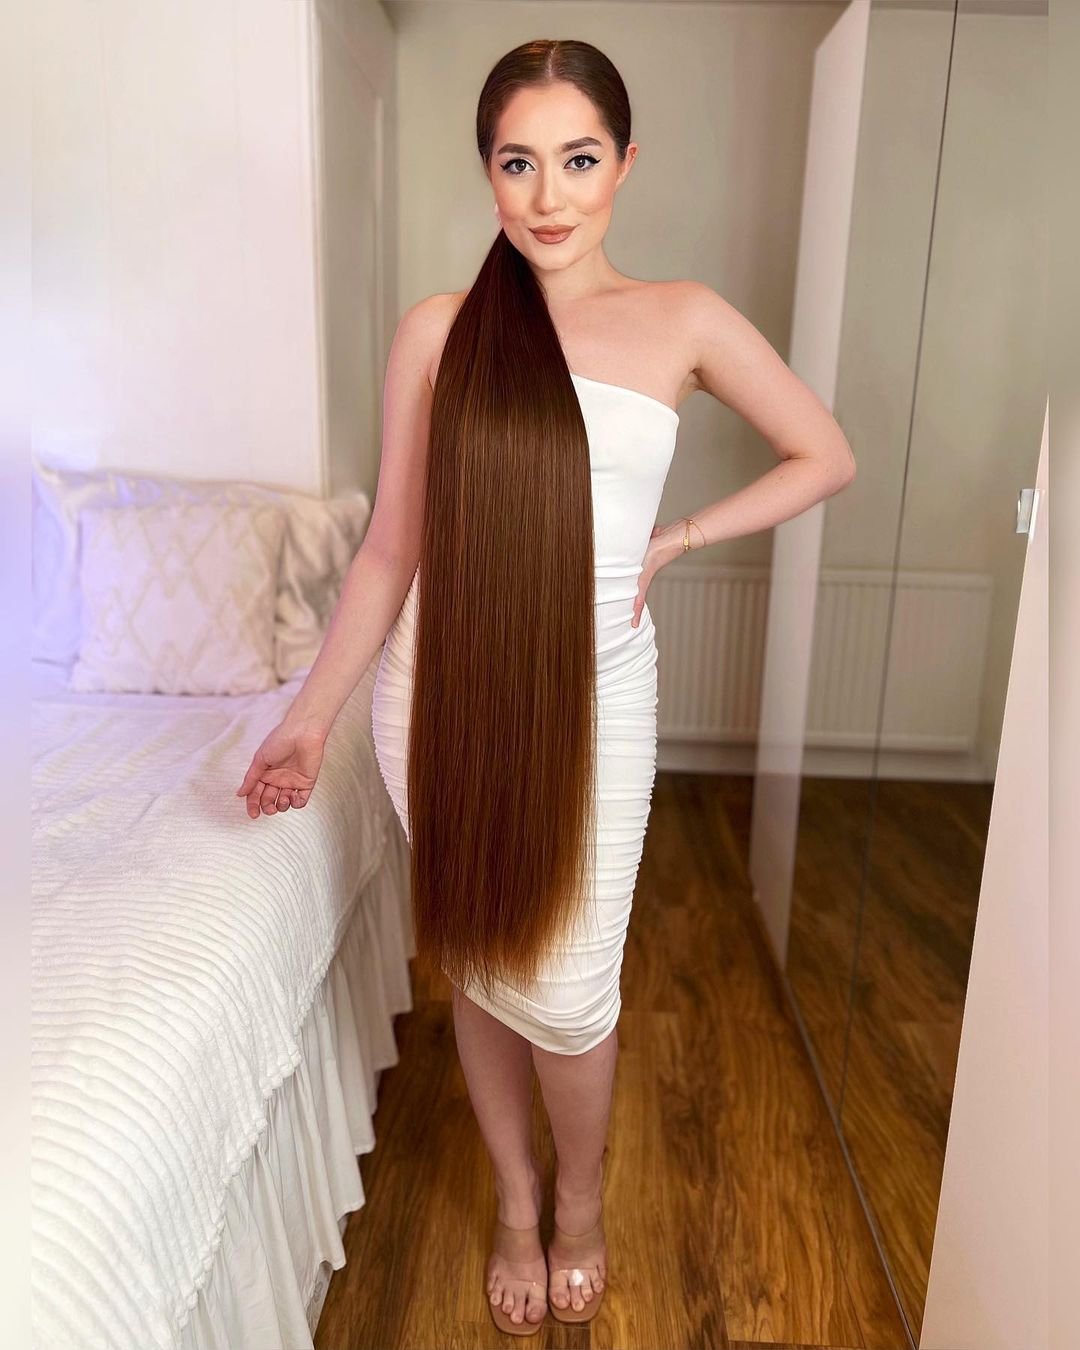 Jasmine Larsen z włosami spiętymi w kucyk, zdjęcie w sypialni